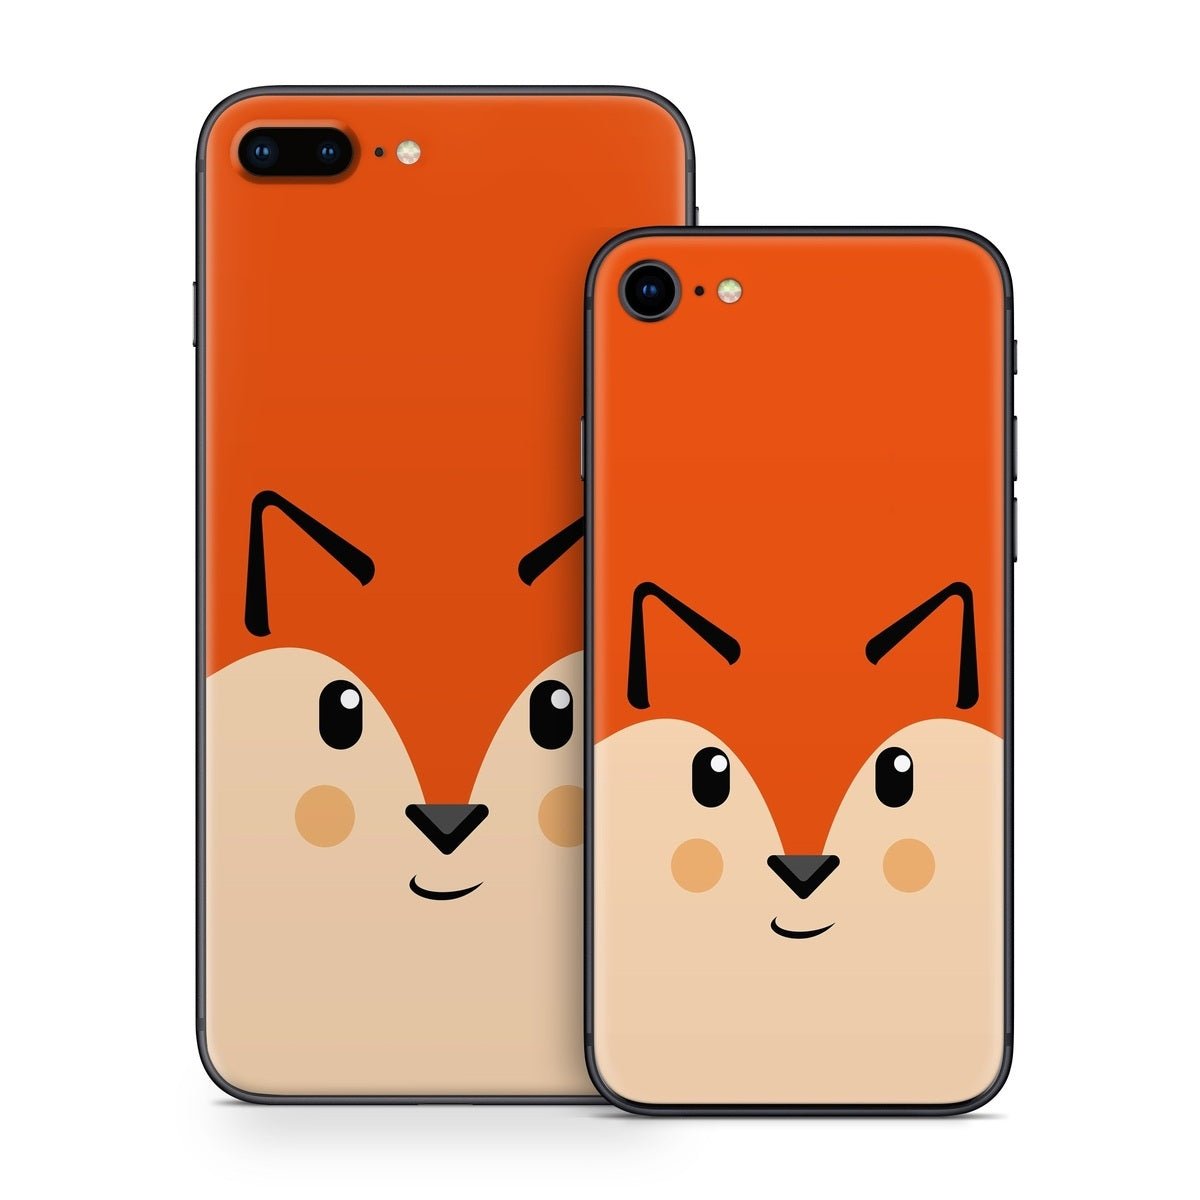 Autumn the Fox - Apple iPhone 8 Skin - The Zoo - DecalGirl